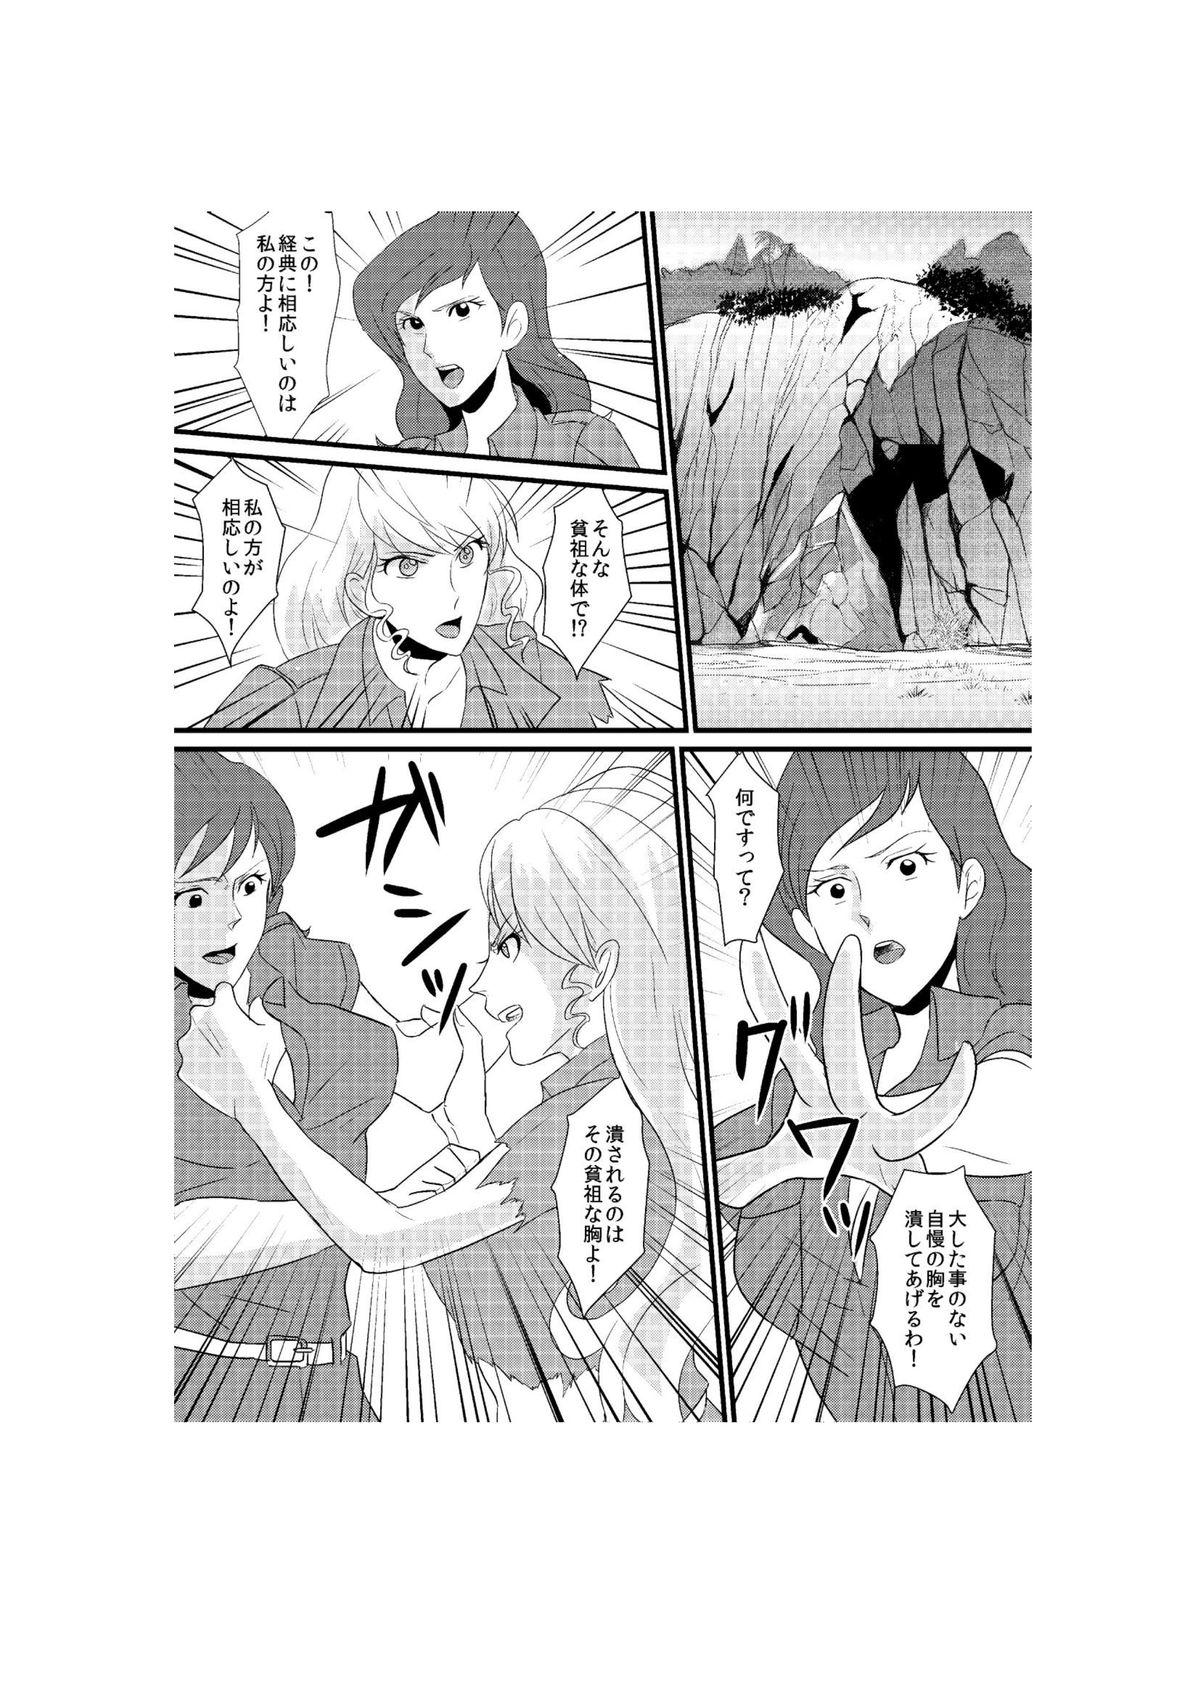 Sub Fushi no Kyouten Ureta Onna no Tatakai - Fujiko VS Emmanuelle - Lupin iii Nice Tits - Page 1